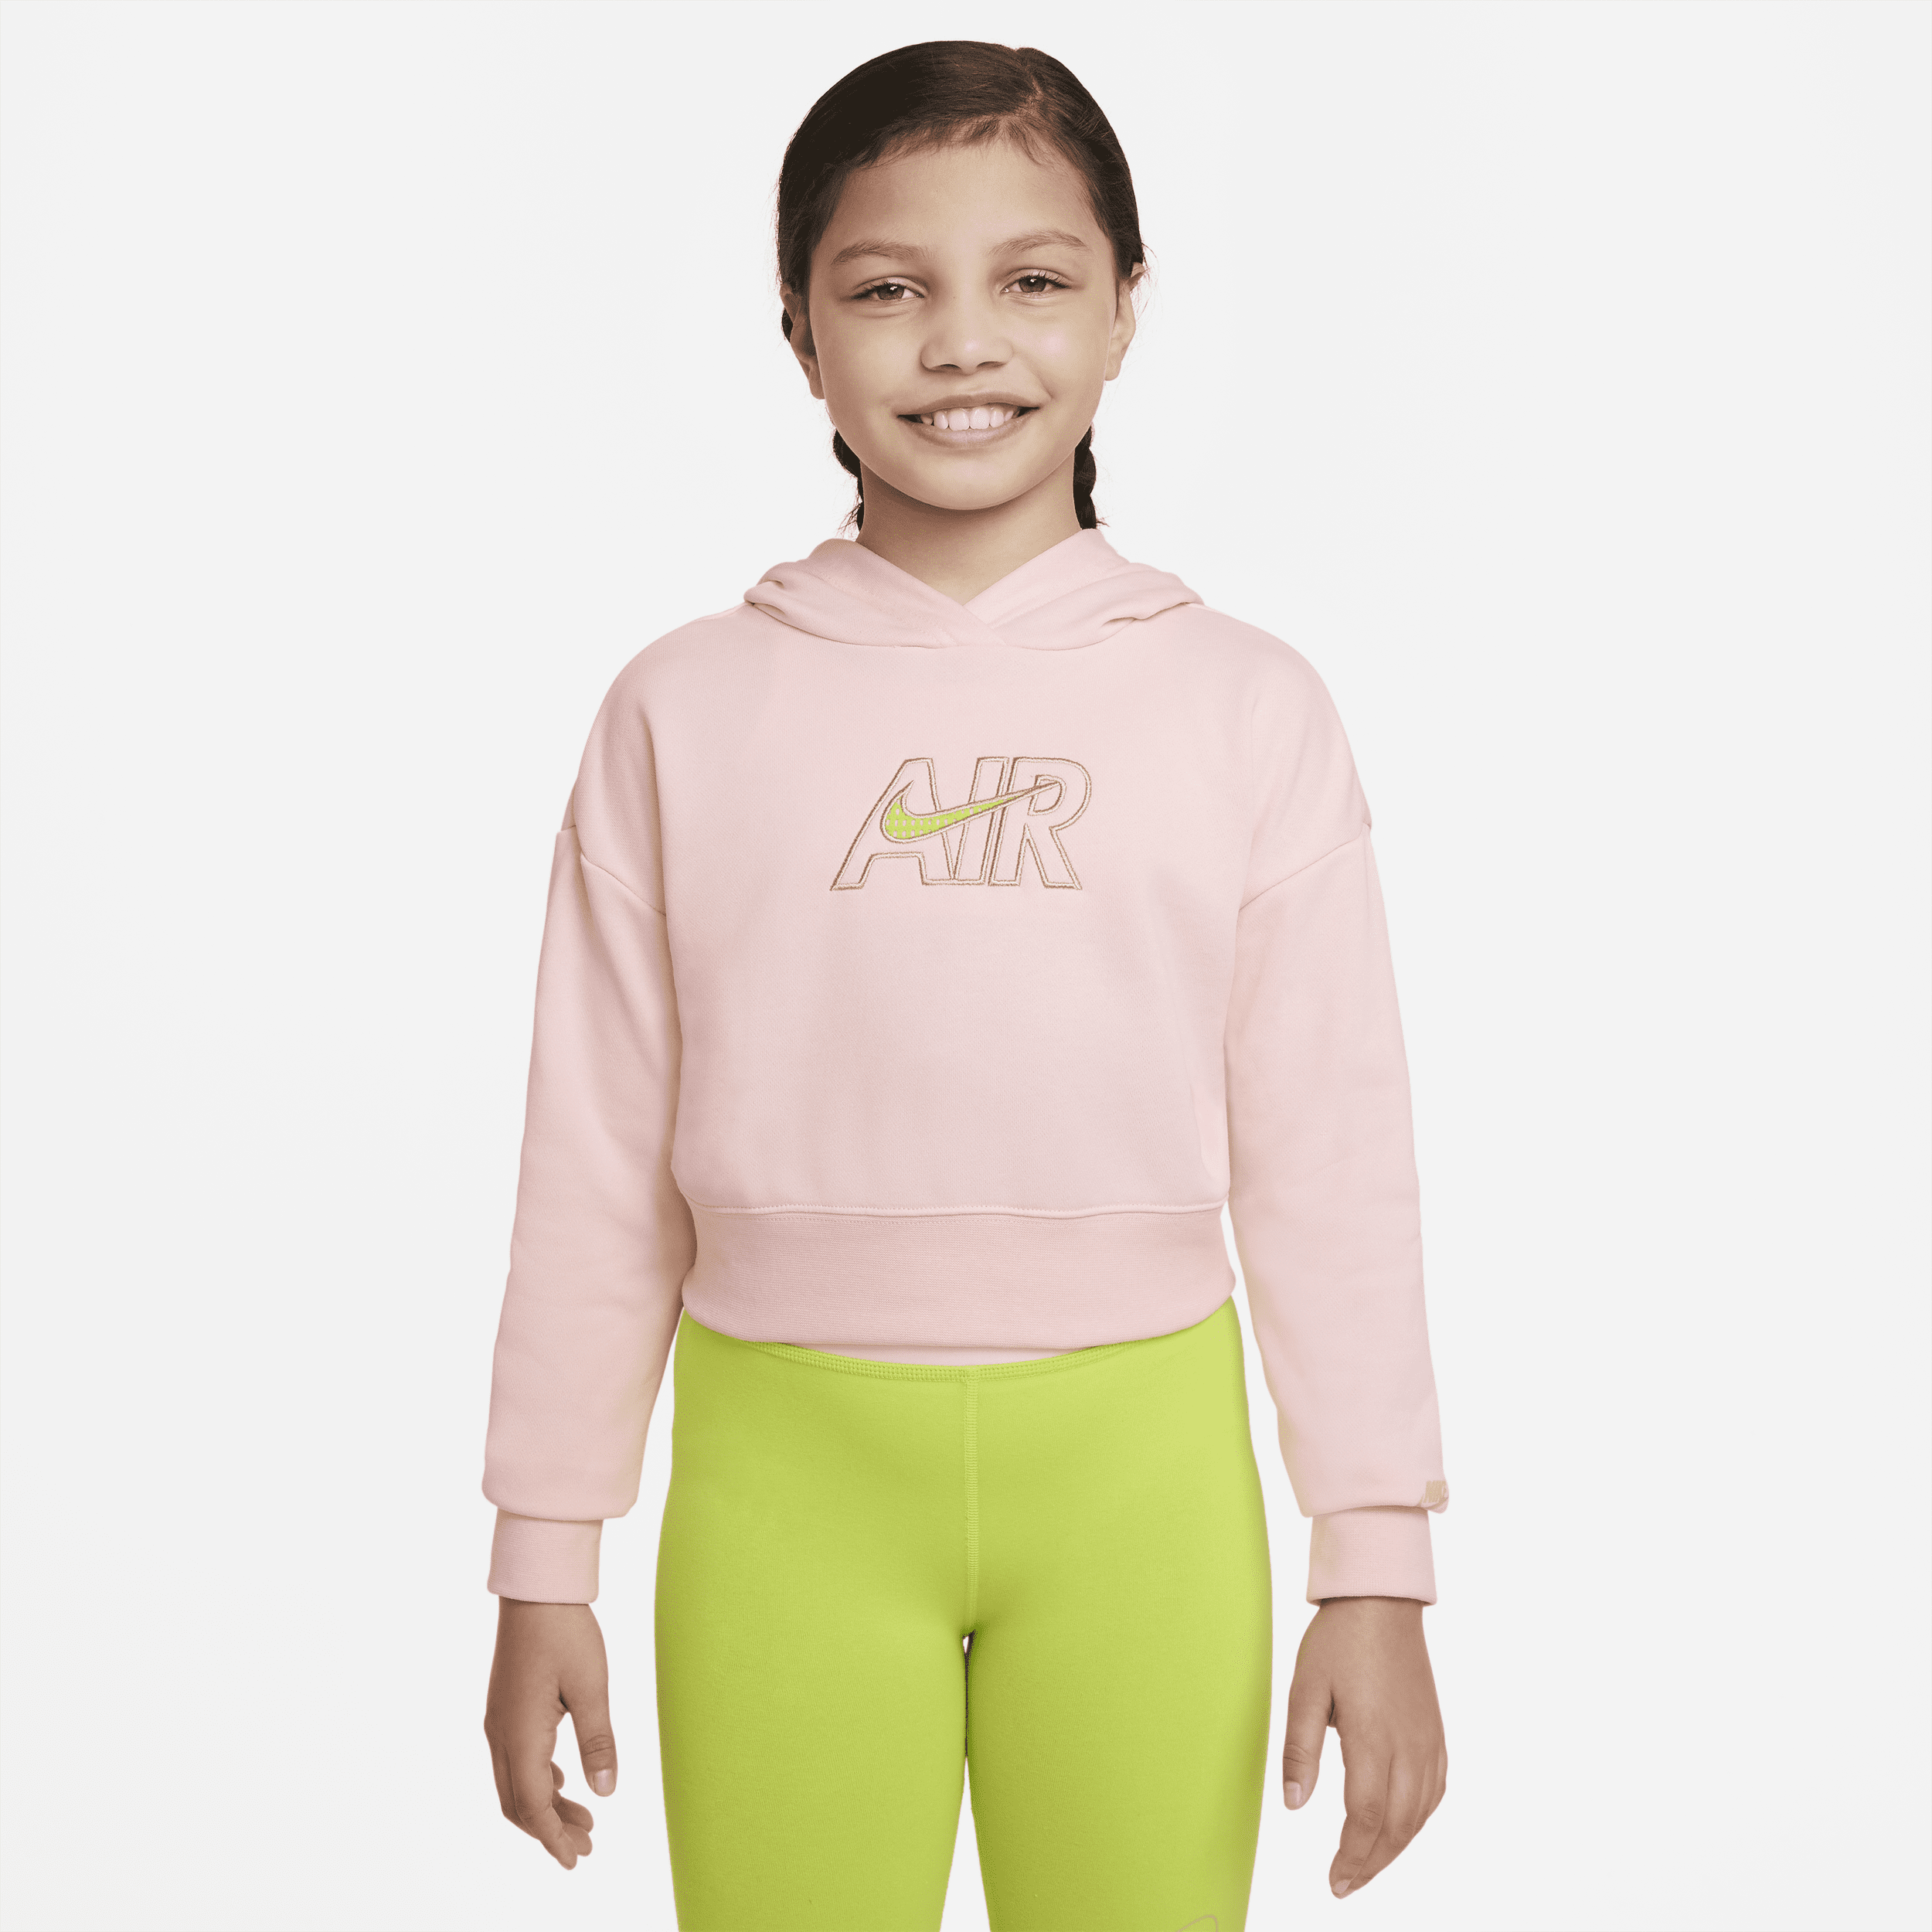 Kort Nike Air-hættetrøje i french terry til større børn (piger) - Pink